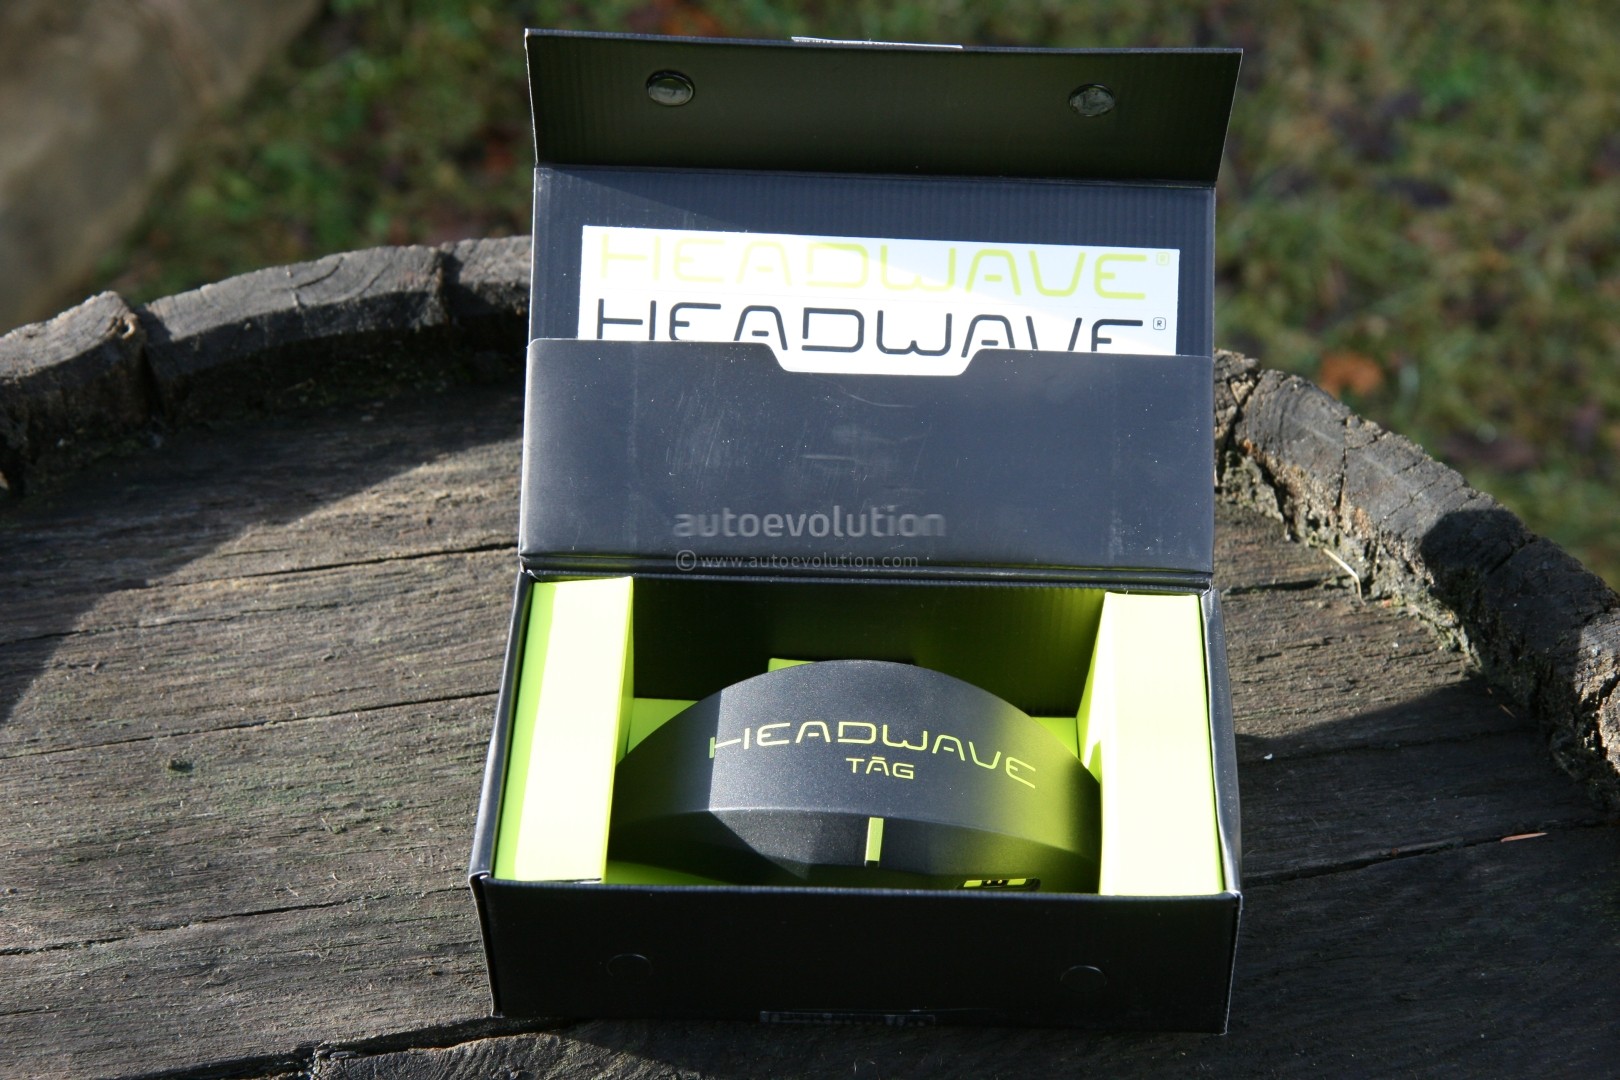 Système de musique pour le casque Headwave Soundsystem TAG 2